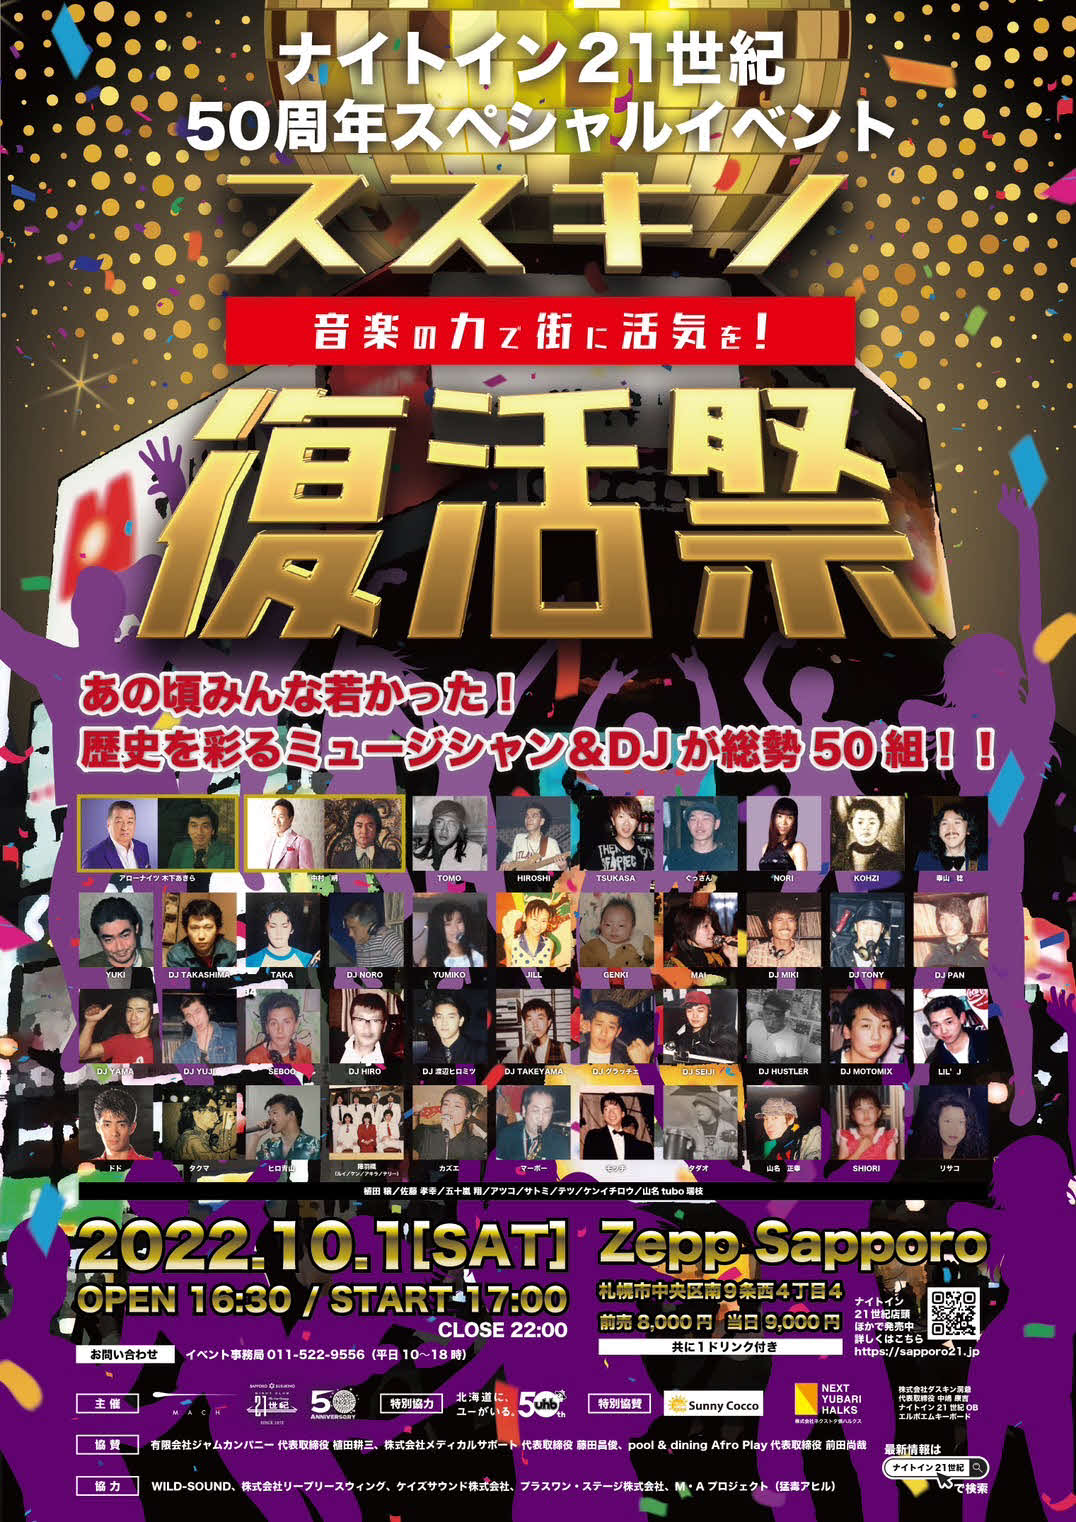 札幌のナイトクラブ「ナインイン21世紀」の50周年イベント